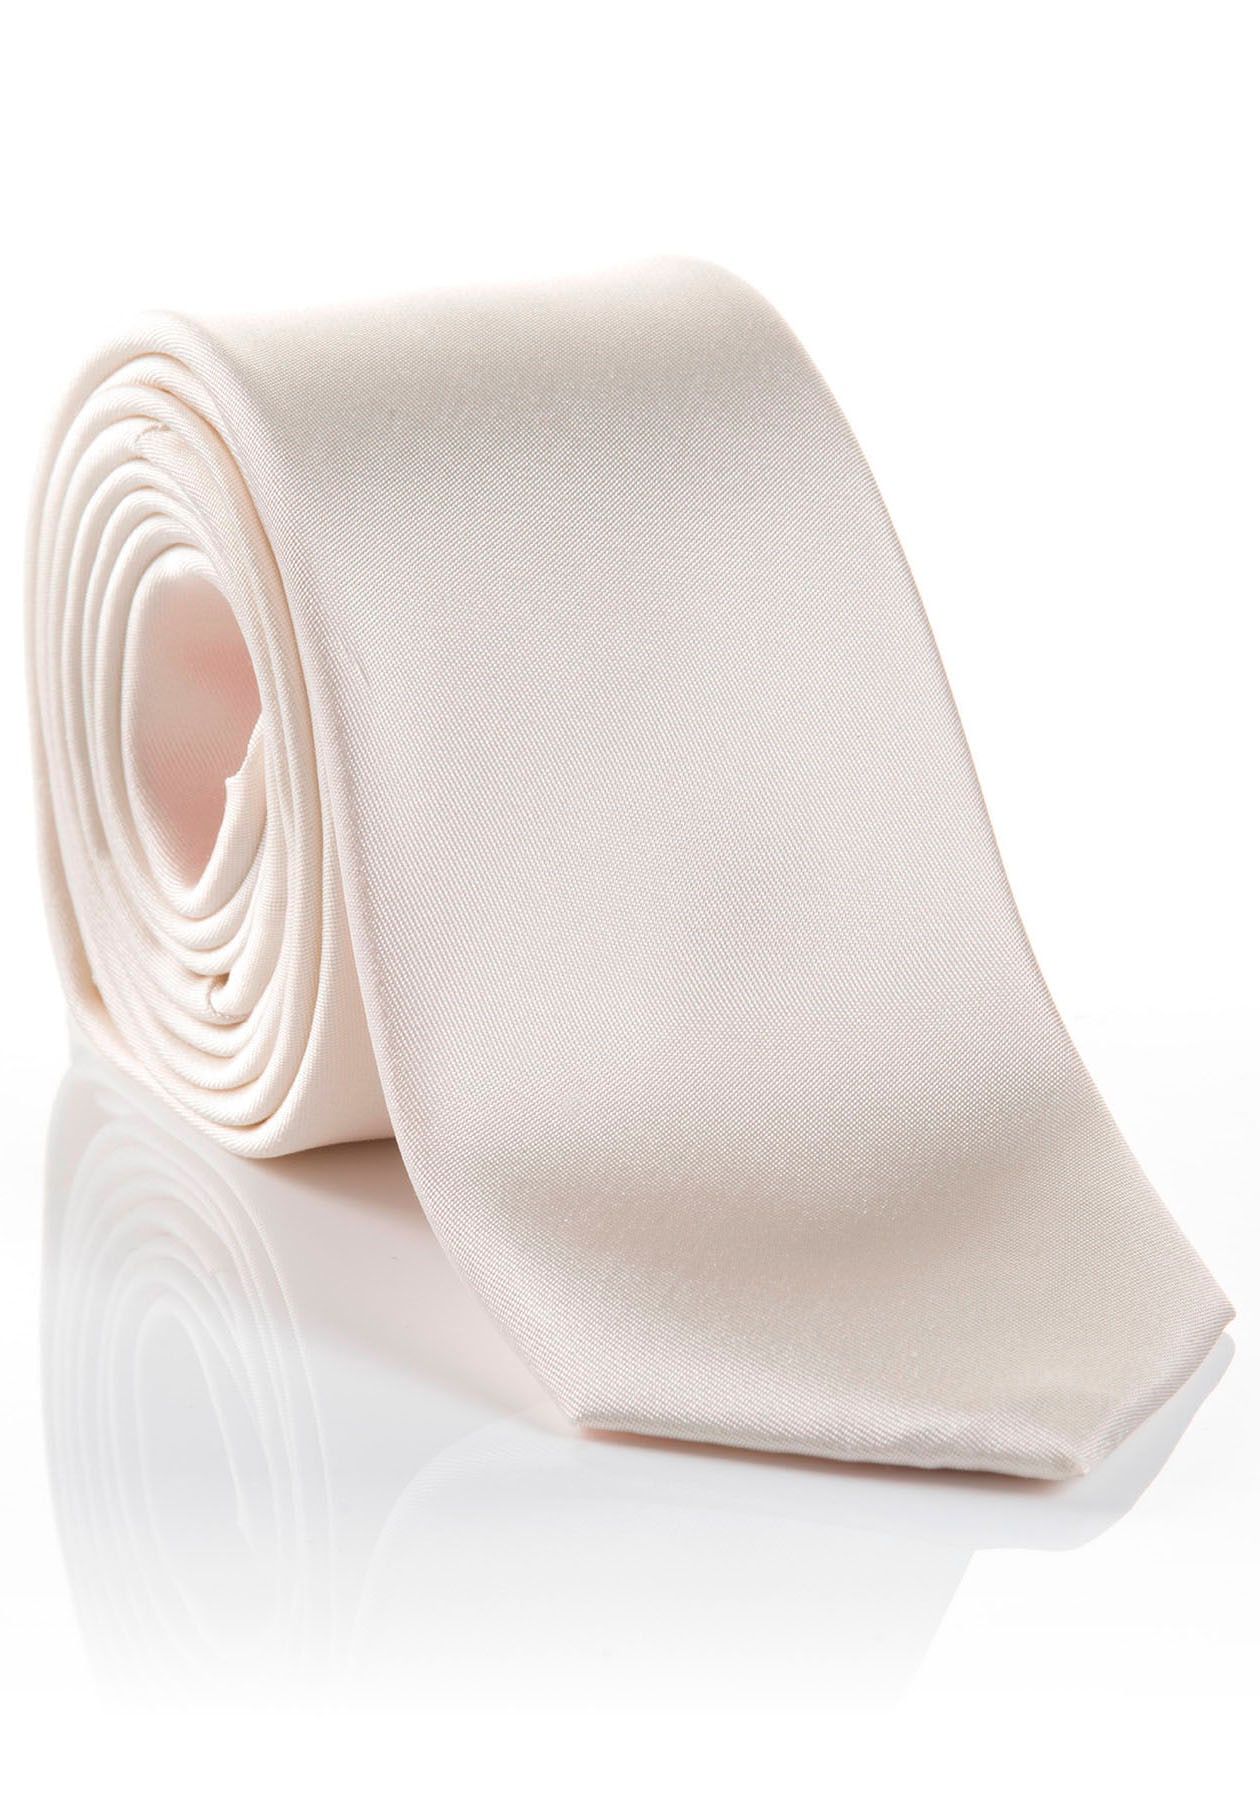 MONTI Krawatte »LIVIO«, Hochwertig verarbeitete Seidenkrawatte mit hohem Tragekomfort